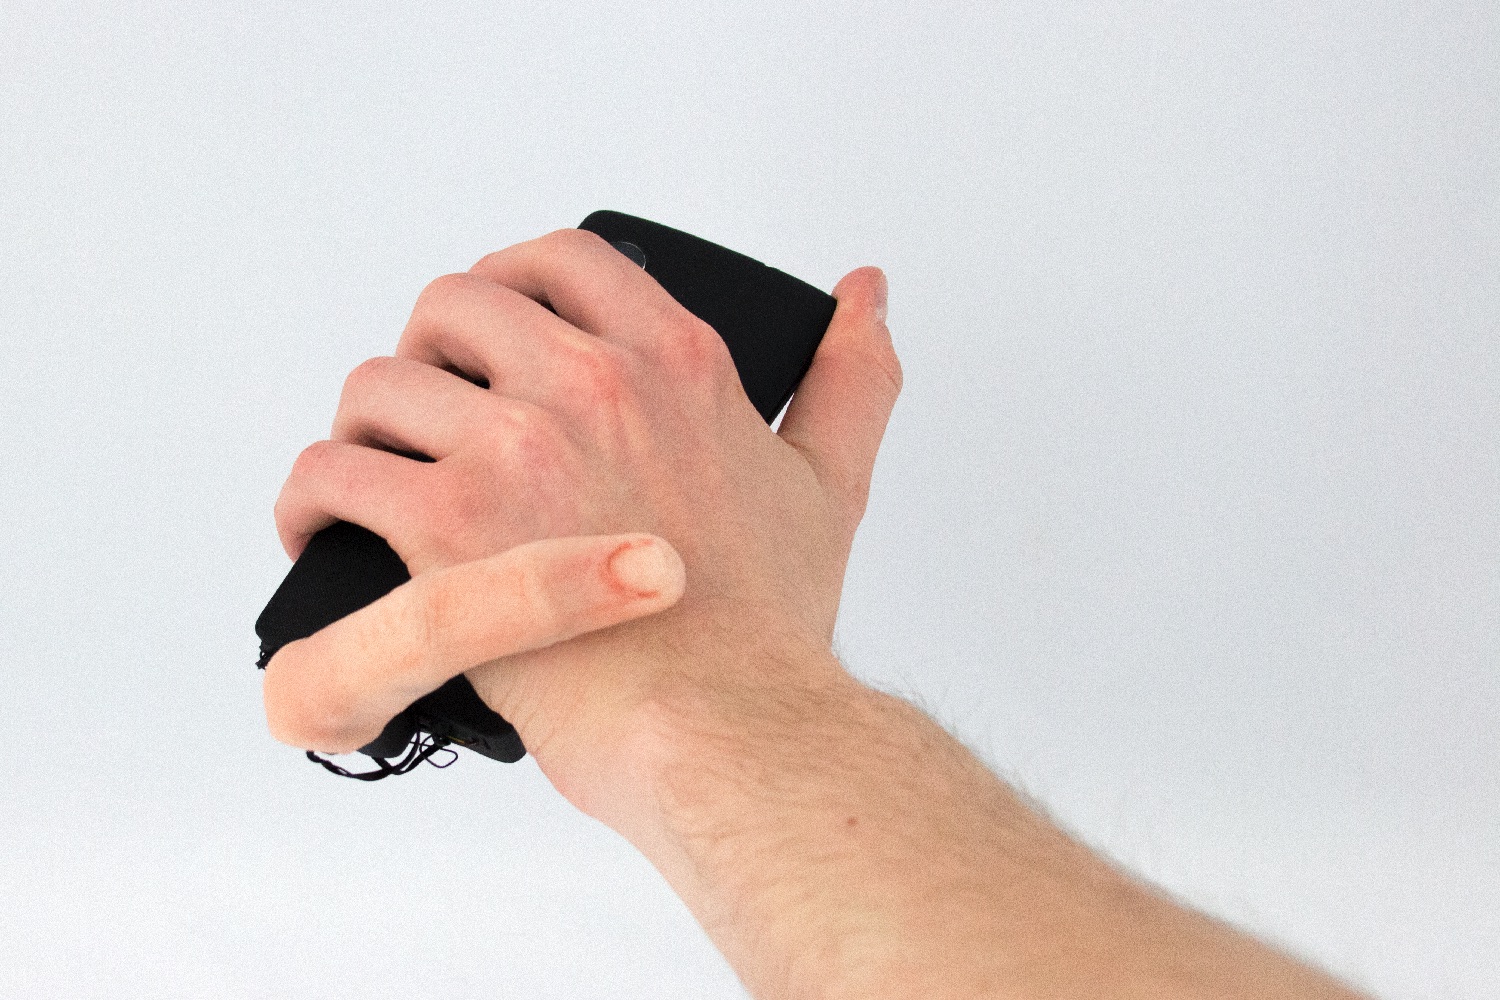 mobilimb robot finger mobilefinger